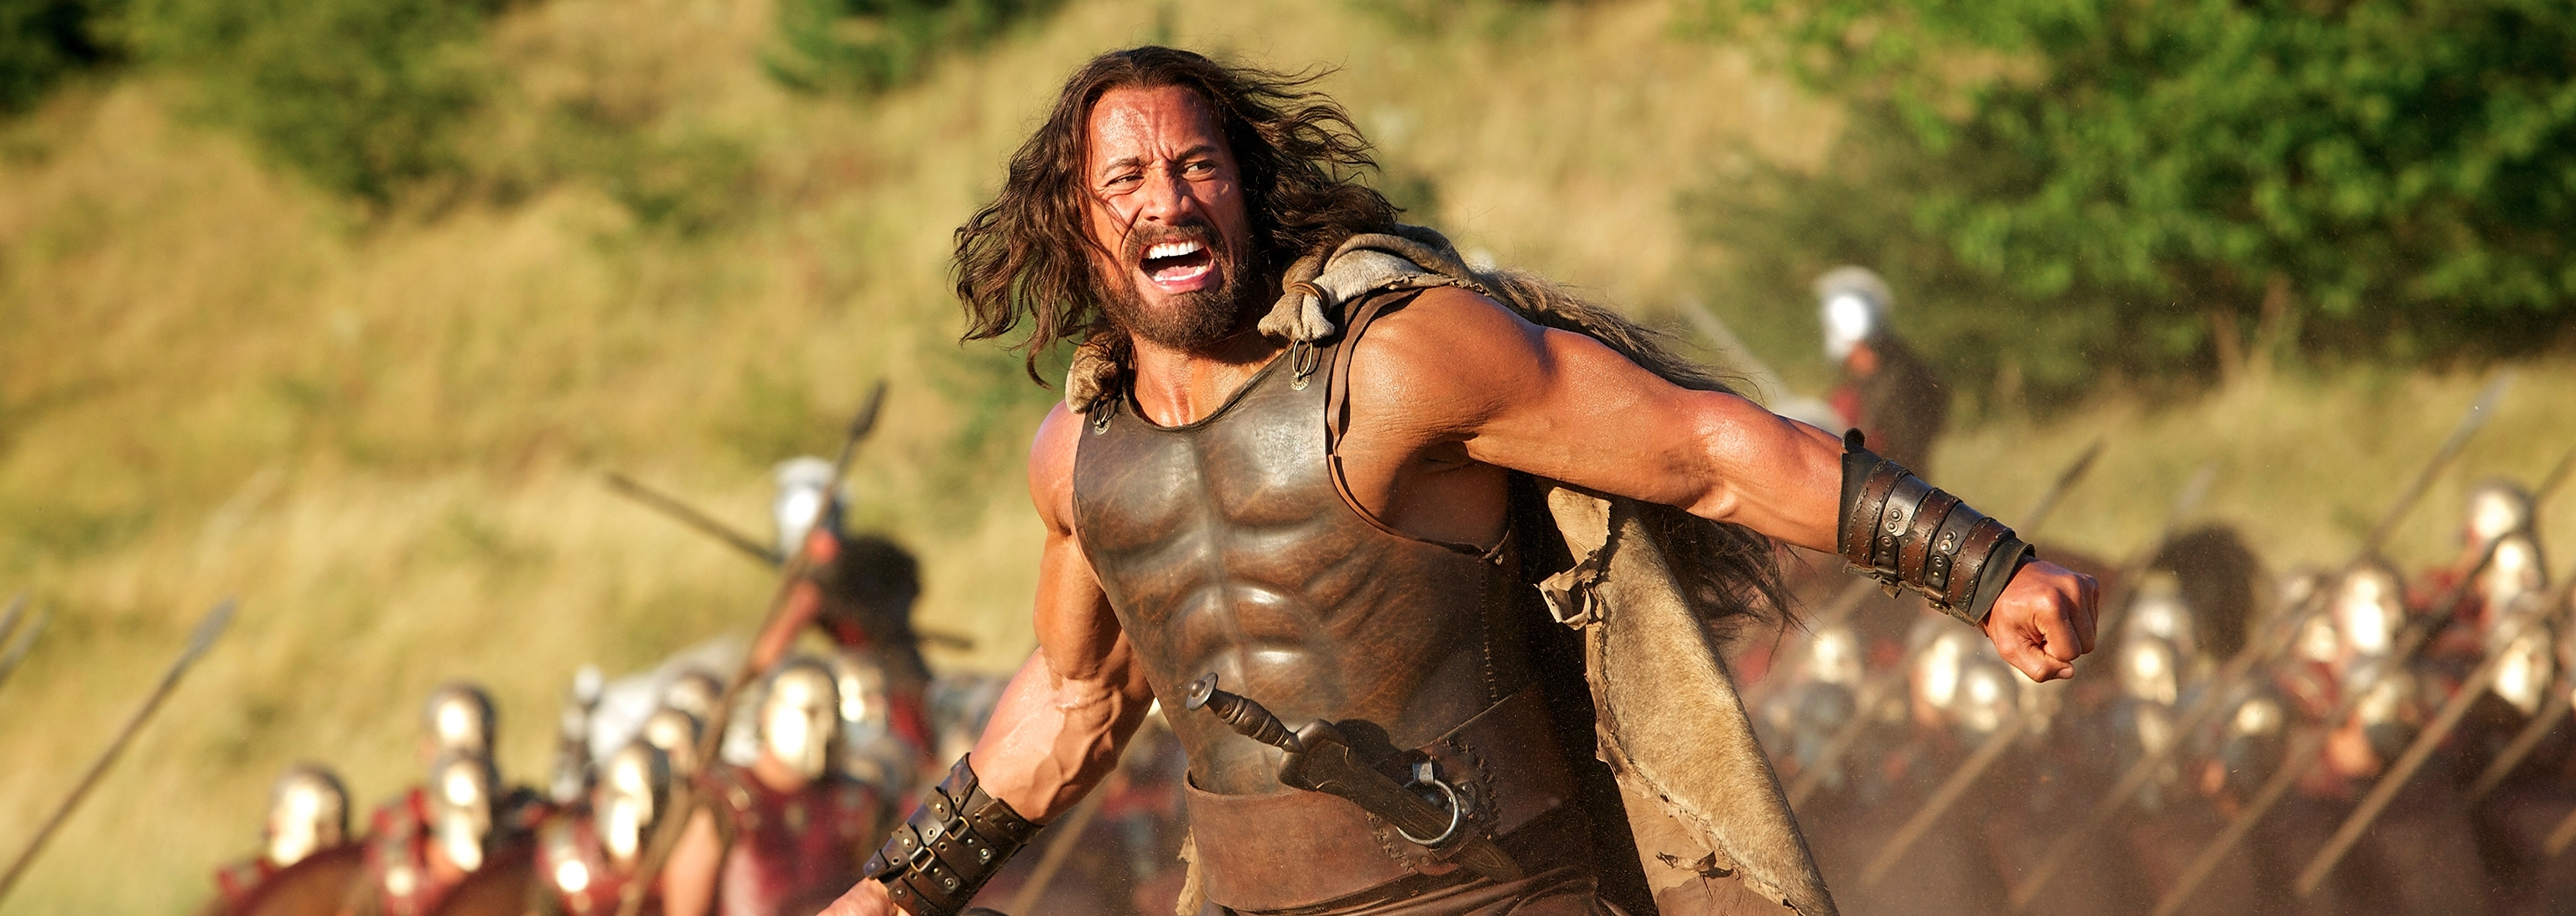 Movie review, Hercules 2014, 3080x1100 Dual Screen Desktop